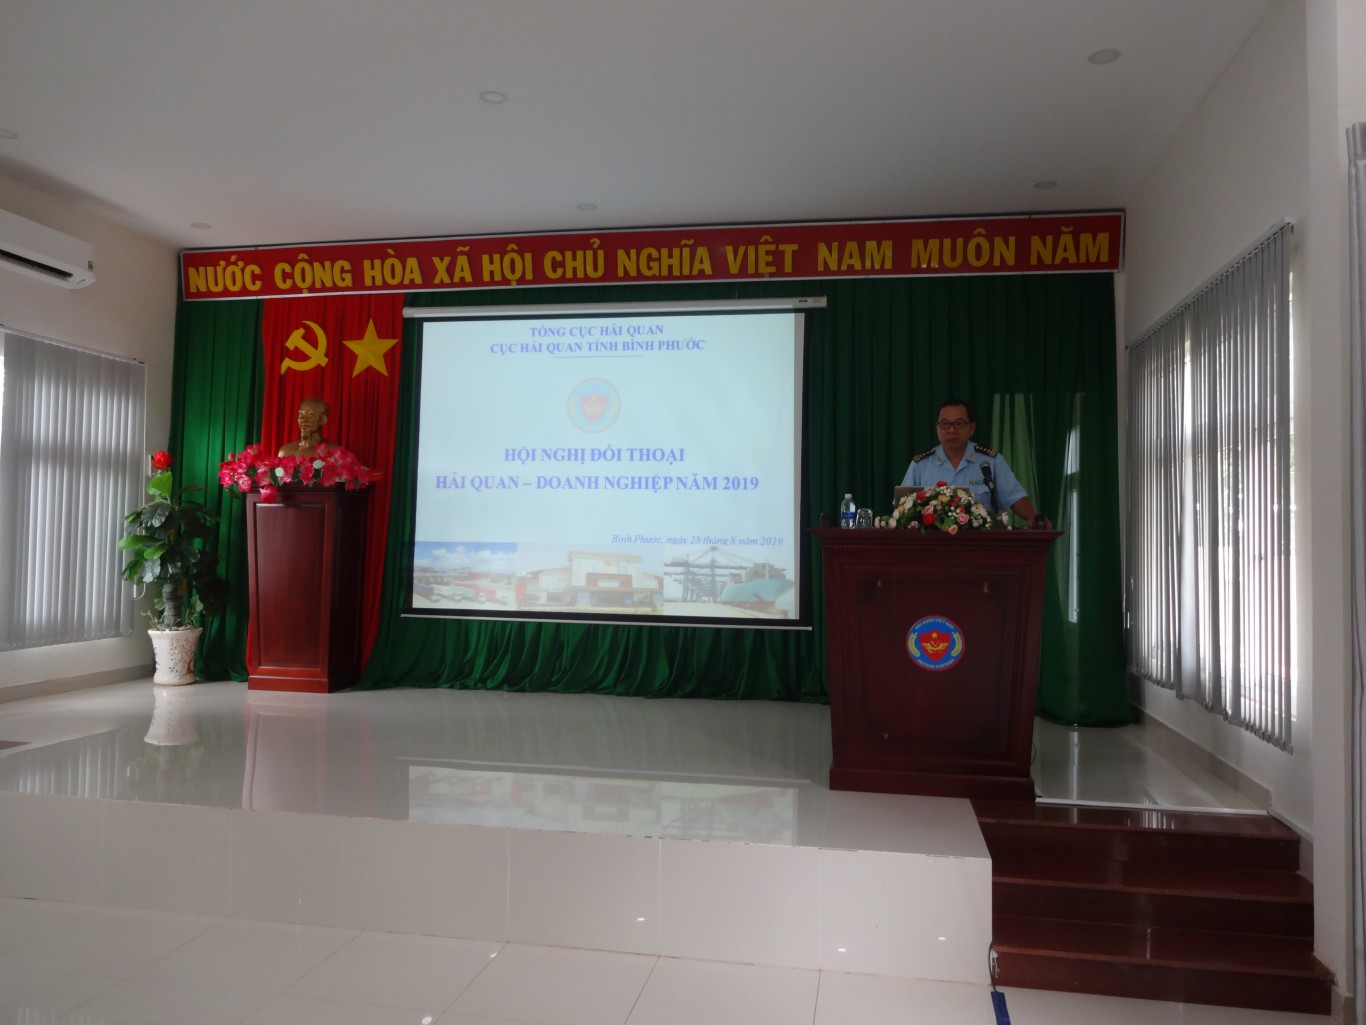 Đồng chí Võ Tri Tâm - Cục trưởng cục Hải quan tỉnh Bình Phước phát biểu